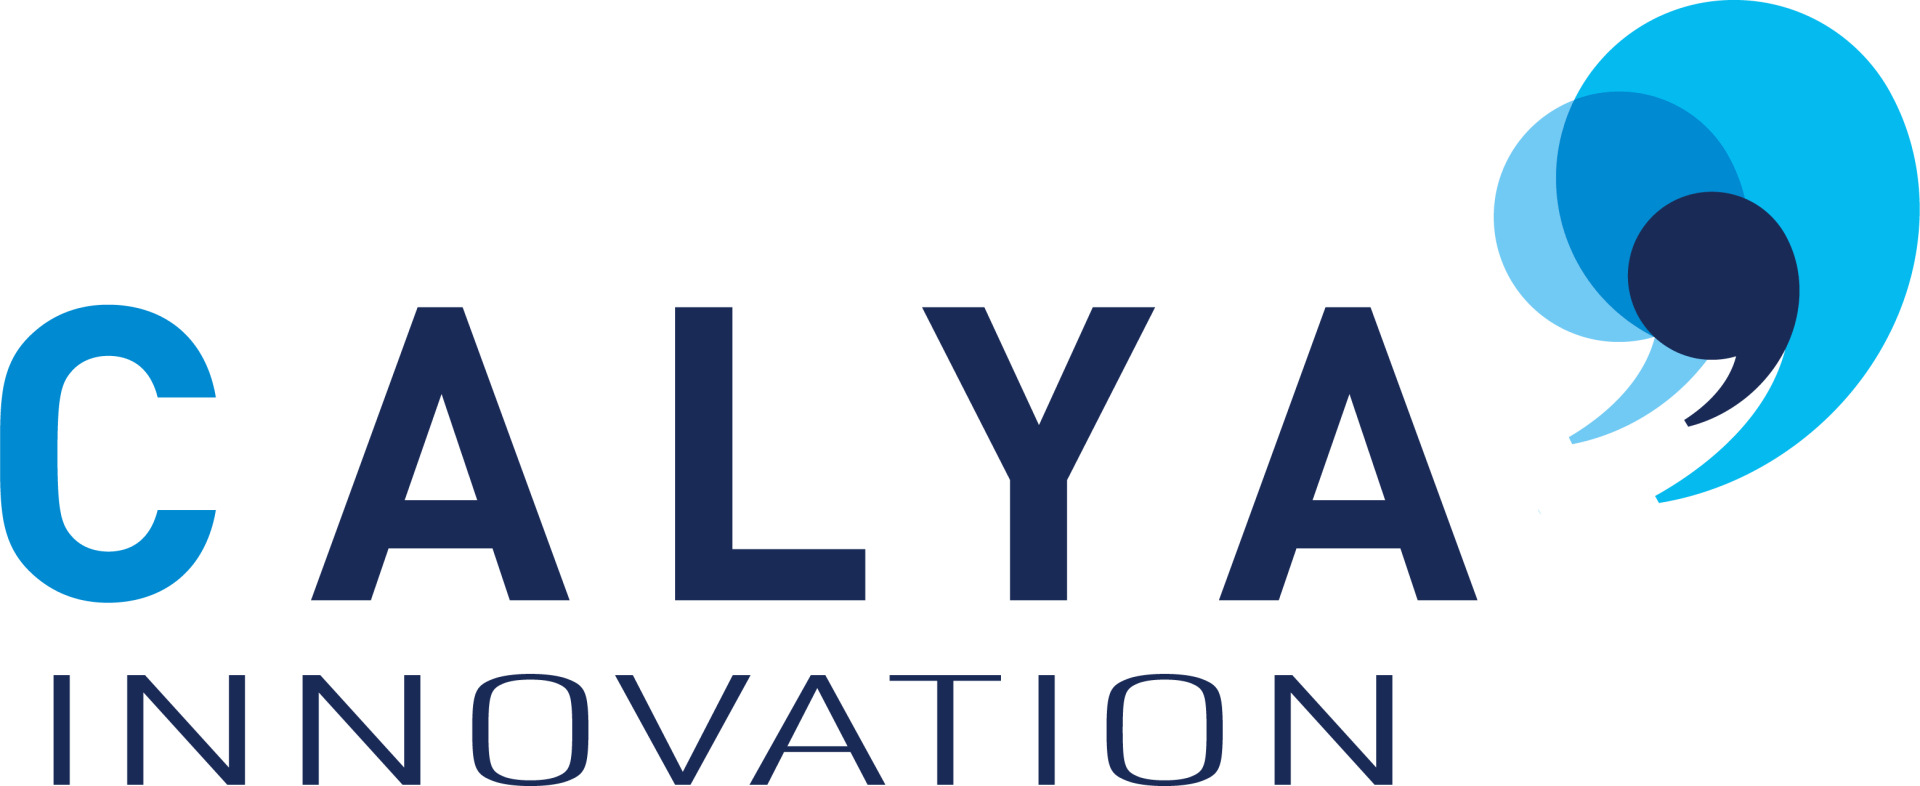 Calya International_logo